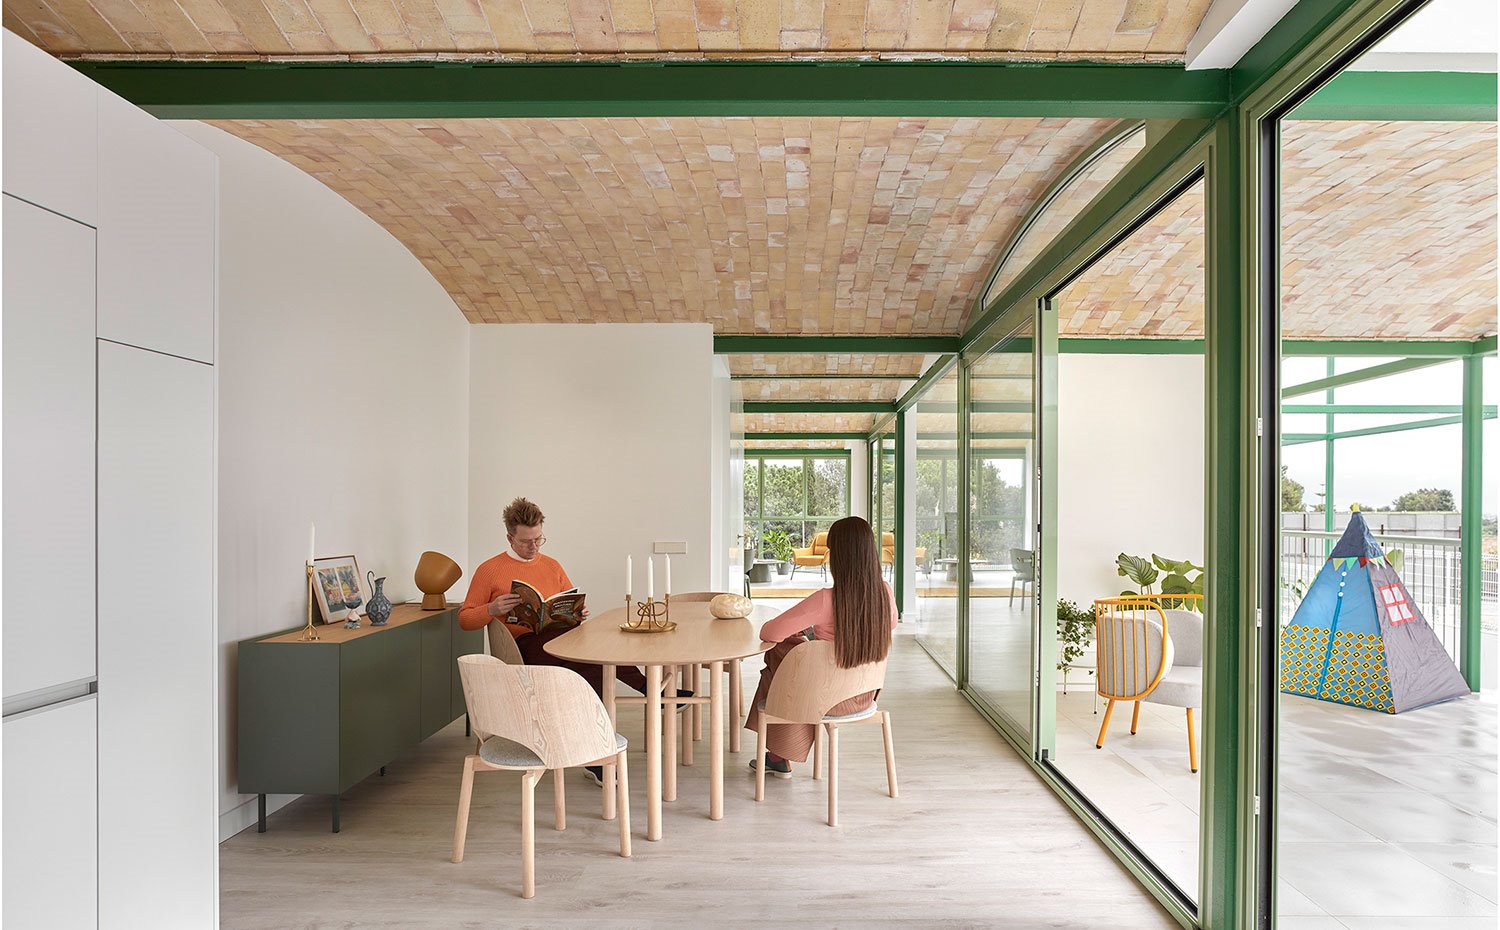 Comedor interior abierto a terraza exterior con mesa y sillas en madera y módulo de almacenaje en verde 